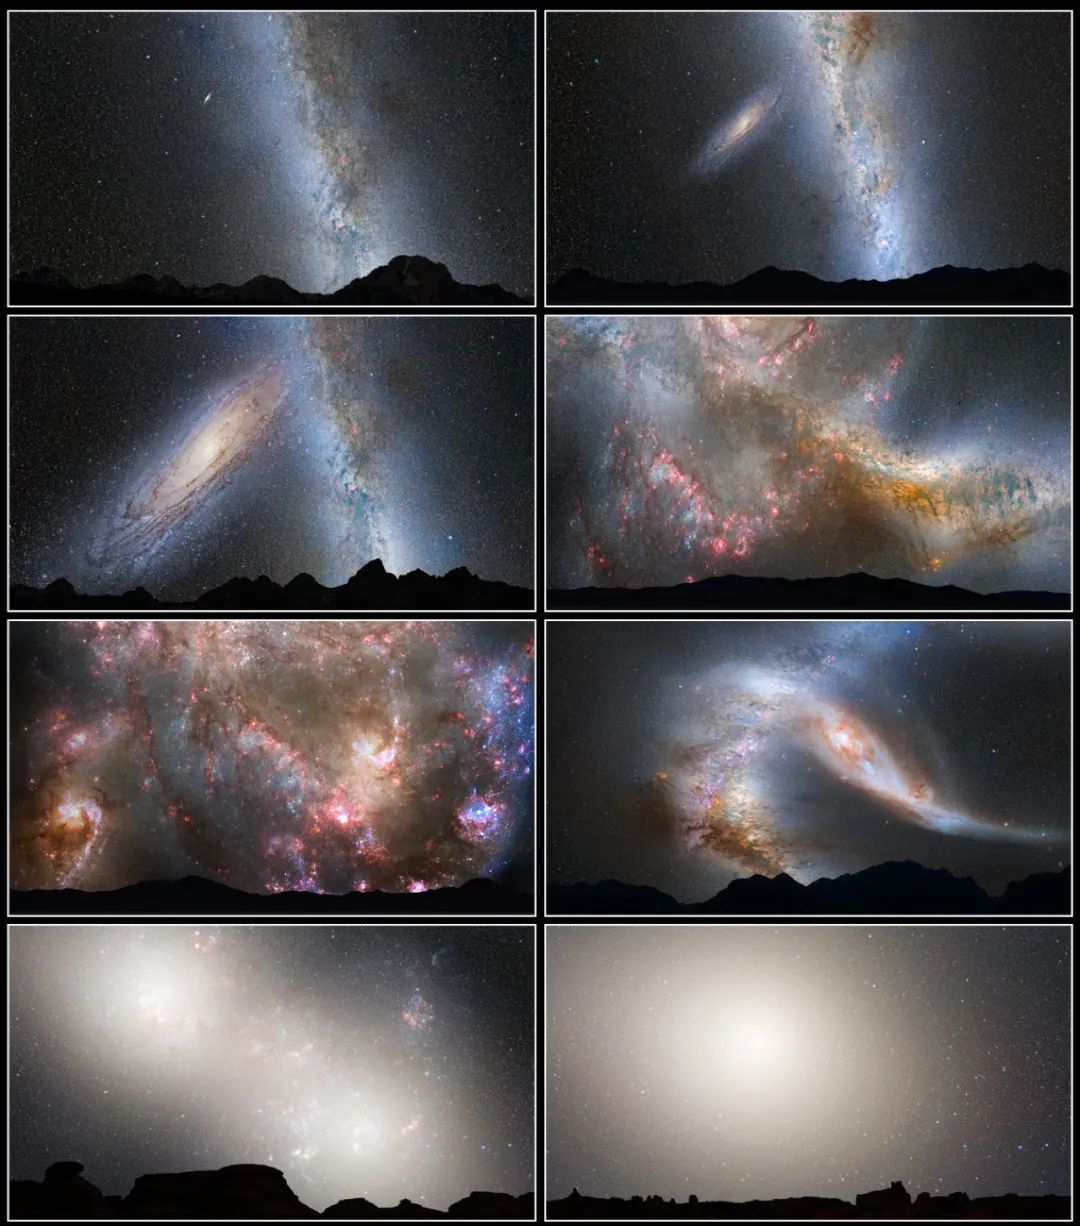 仙女座星系被巨大气体晕笼罩！哈勃测绘出前所未有的细节